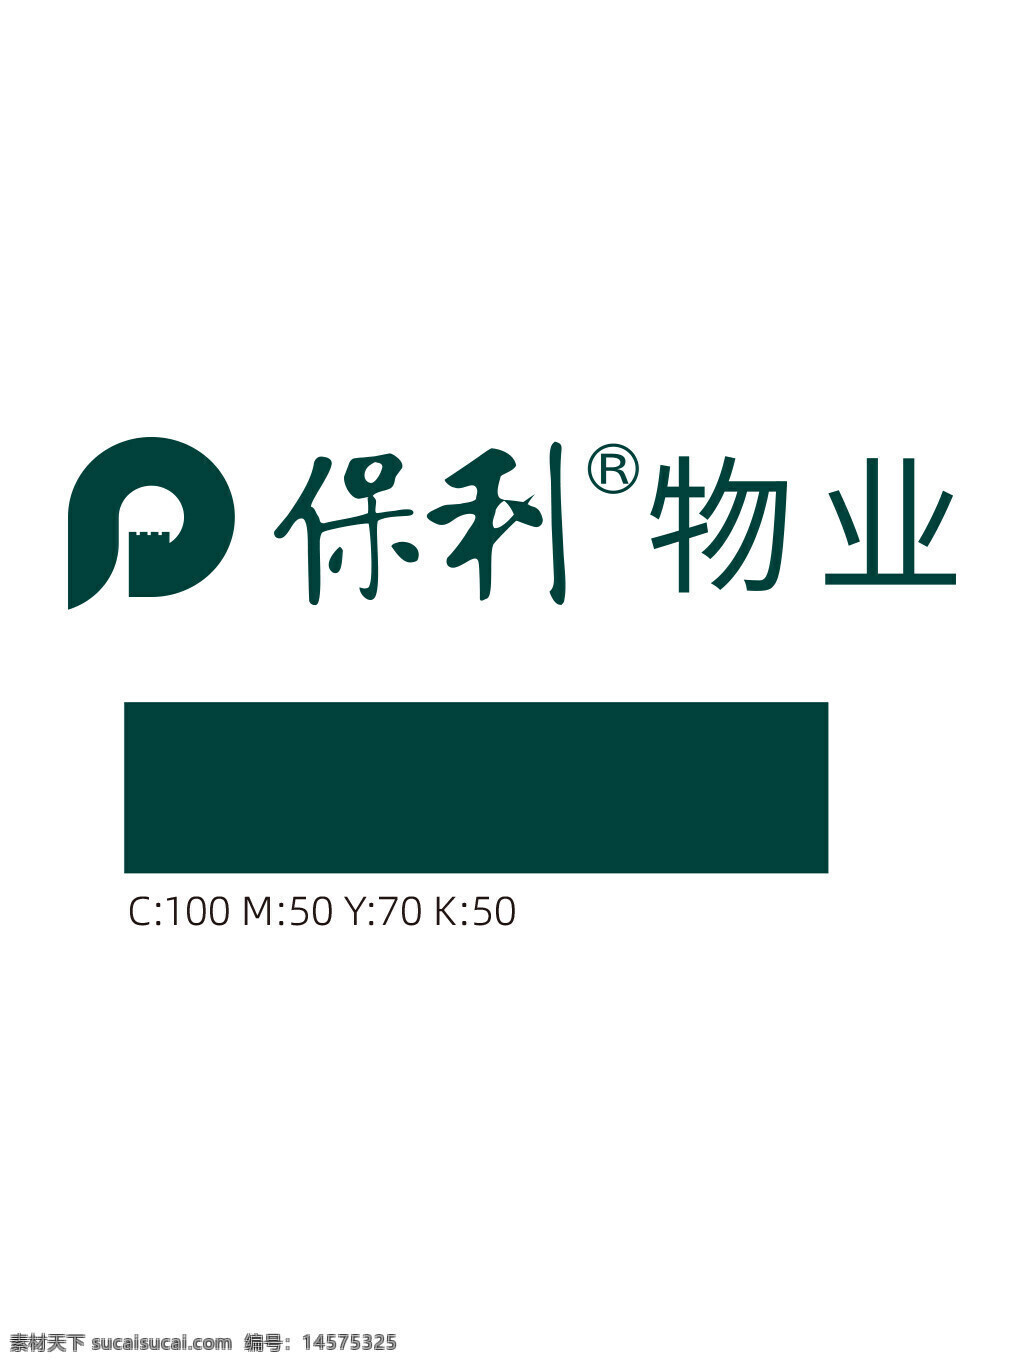 保利物业 新版logo